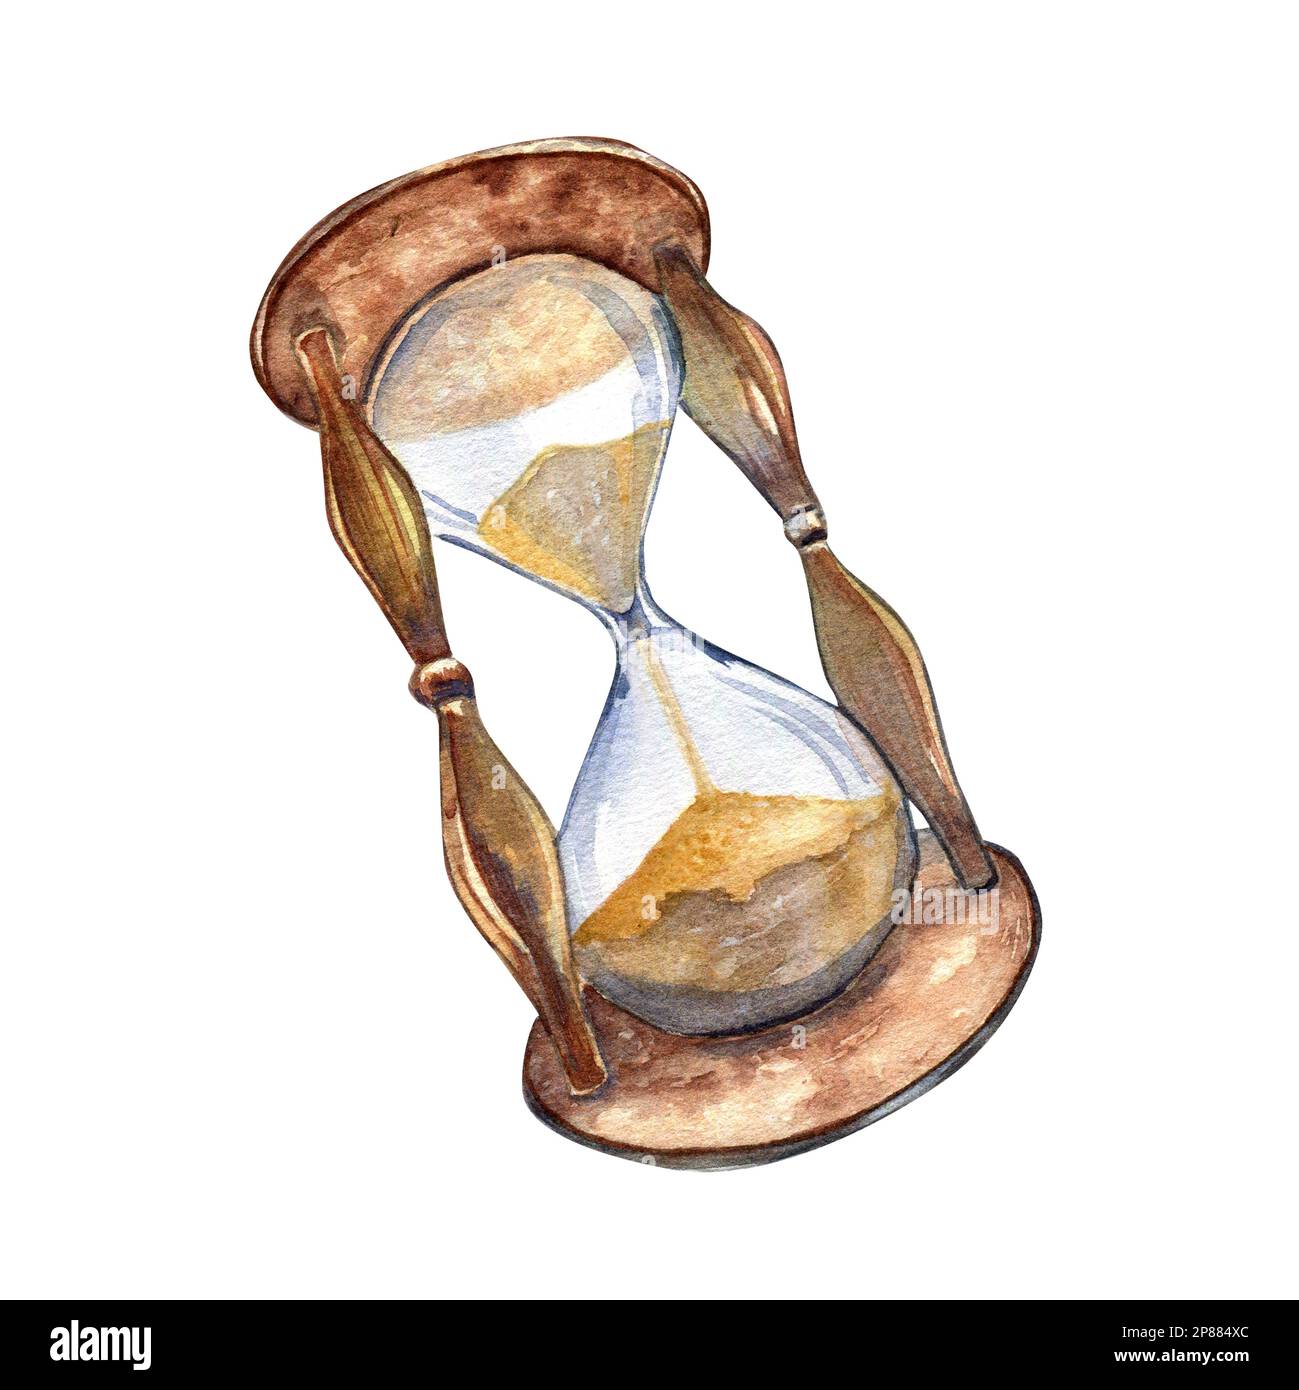 Stundenglas im Vintage-Stil, Aquarell, isoliert auf weißem Hintergrund. Altes Sandglas, handgezeichnet. Designelement für Sea Adventure Kollektion Stockfoto